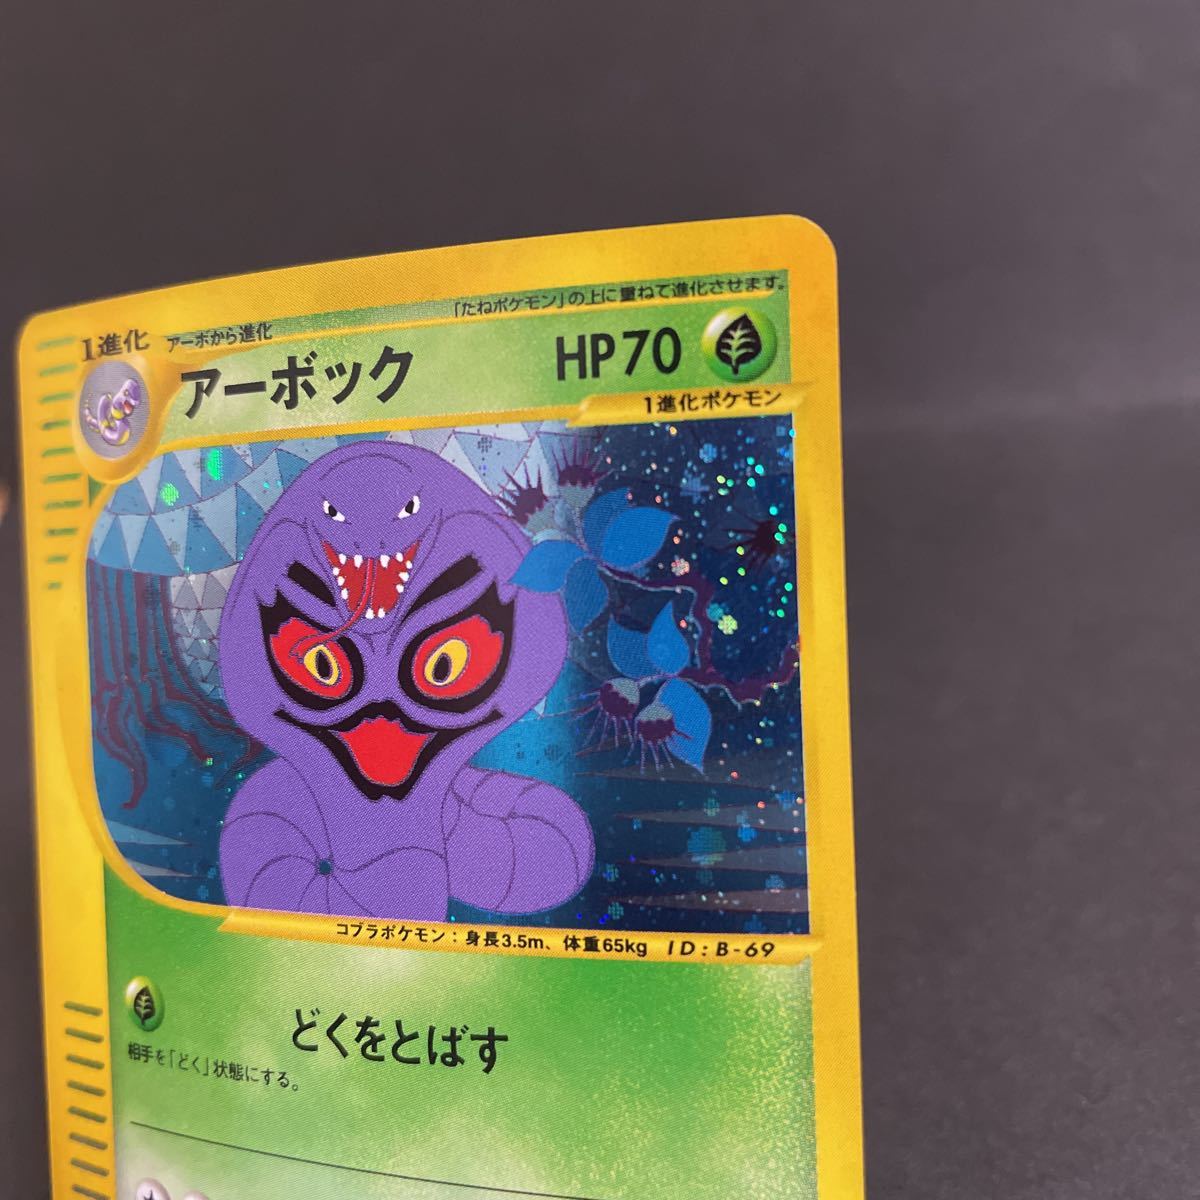 【即決・送料無料】アーボック 099 / 128 1ED 1 edition キラ ポケモンカードe pokemon card e Arbok